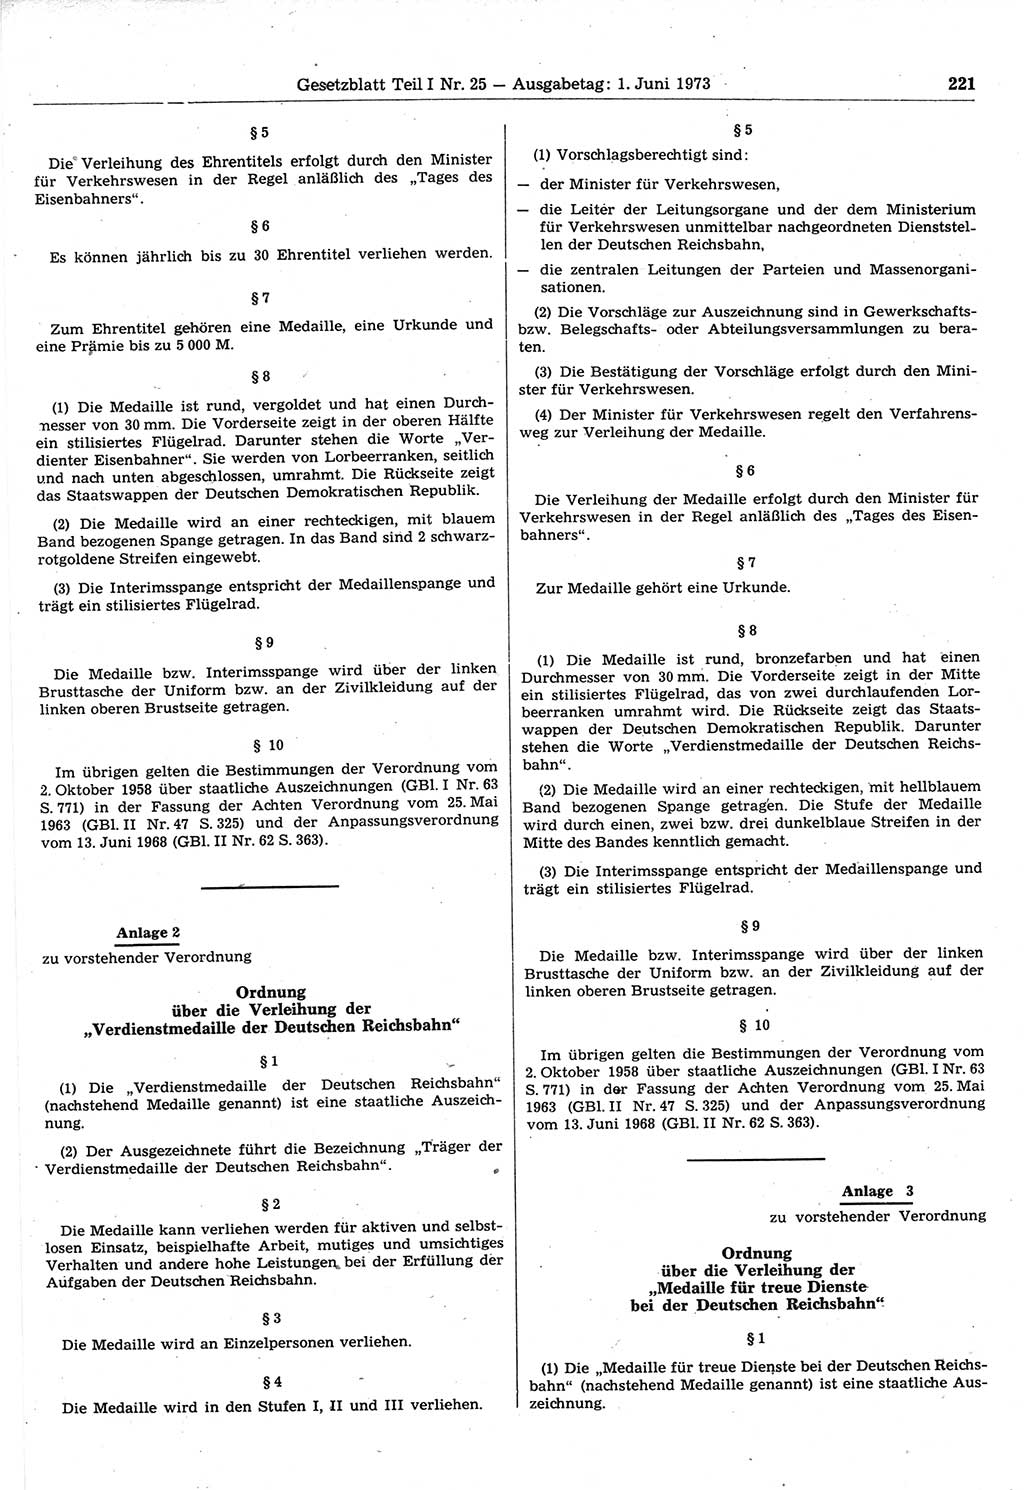 Gesetzblatt (GBl.) der Deutschen Demokratischen Republik (DDR) Teil Ⅰ 1973, Seite 221 (GBl. DDR Ⅰ 1973, S. 221)